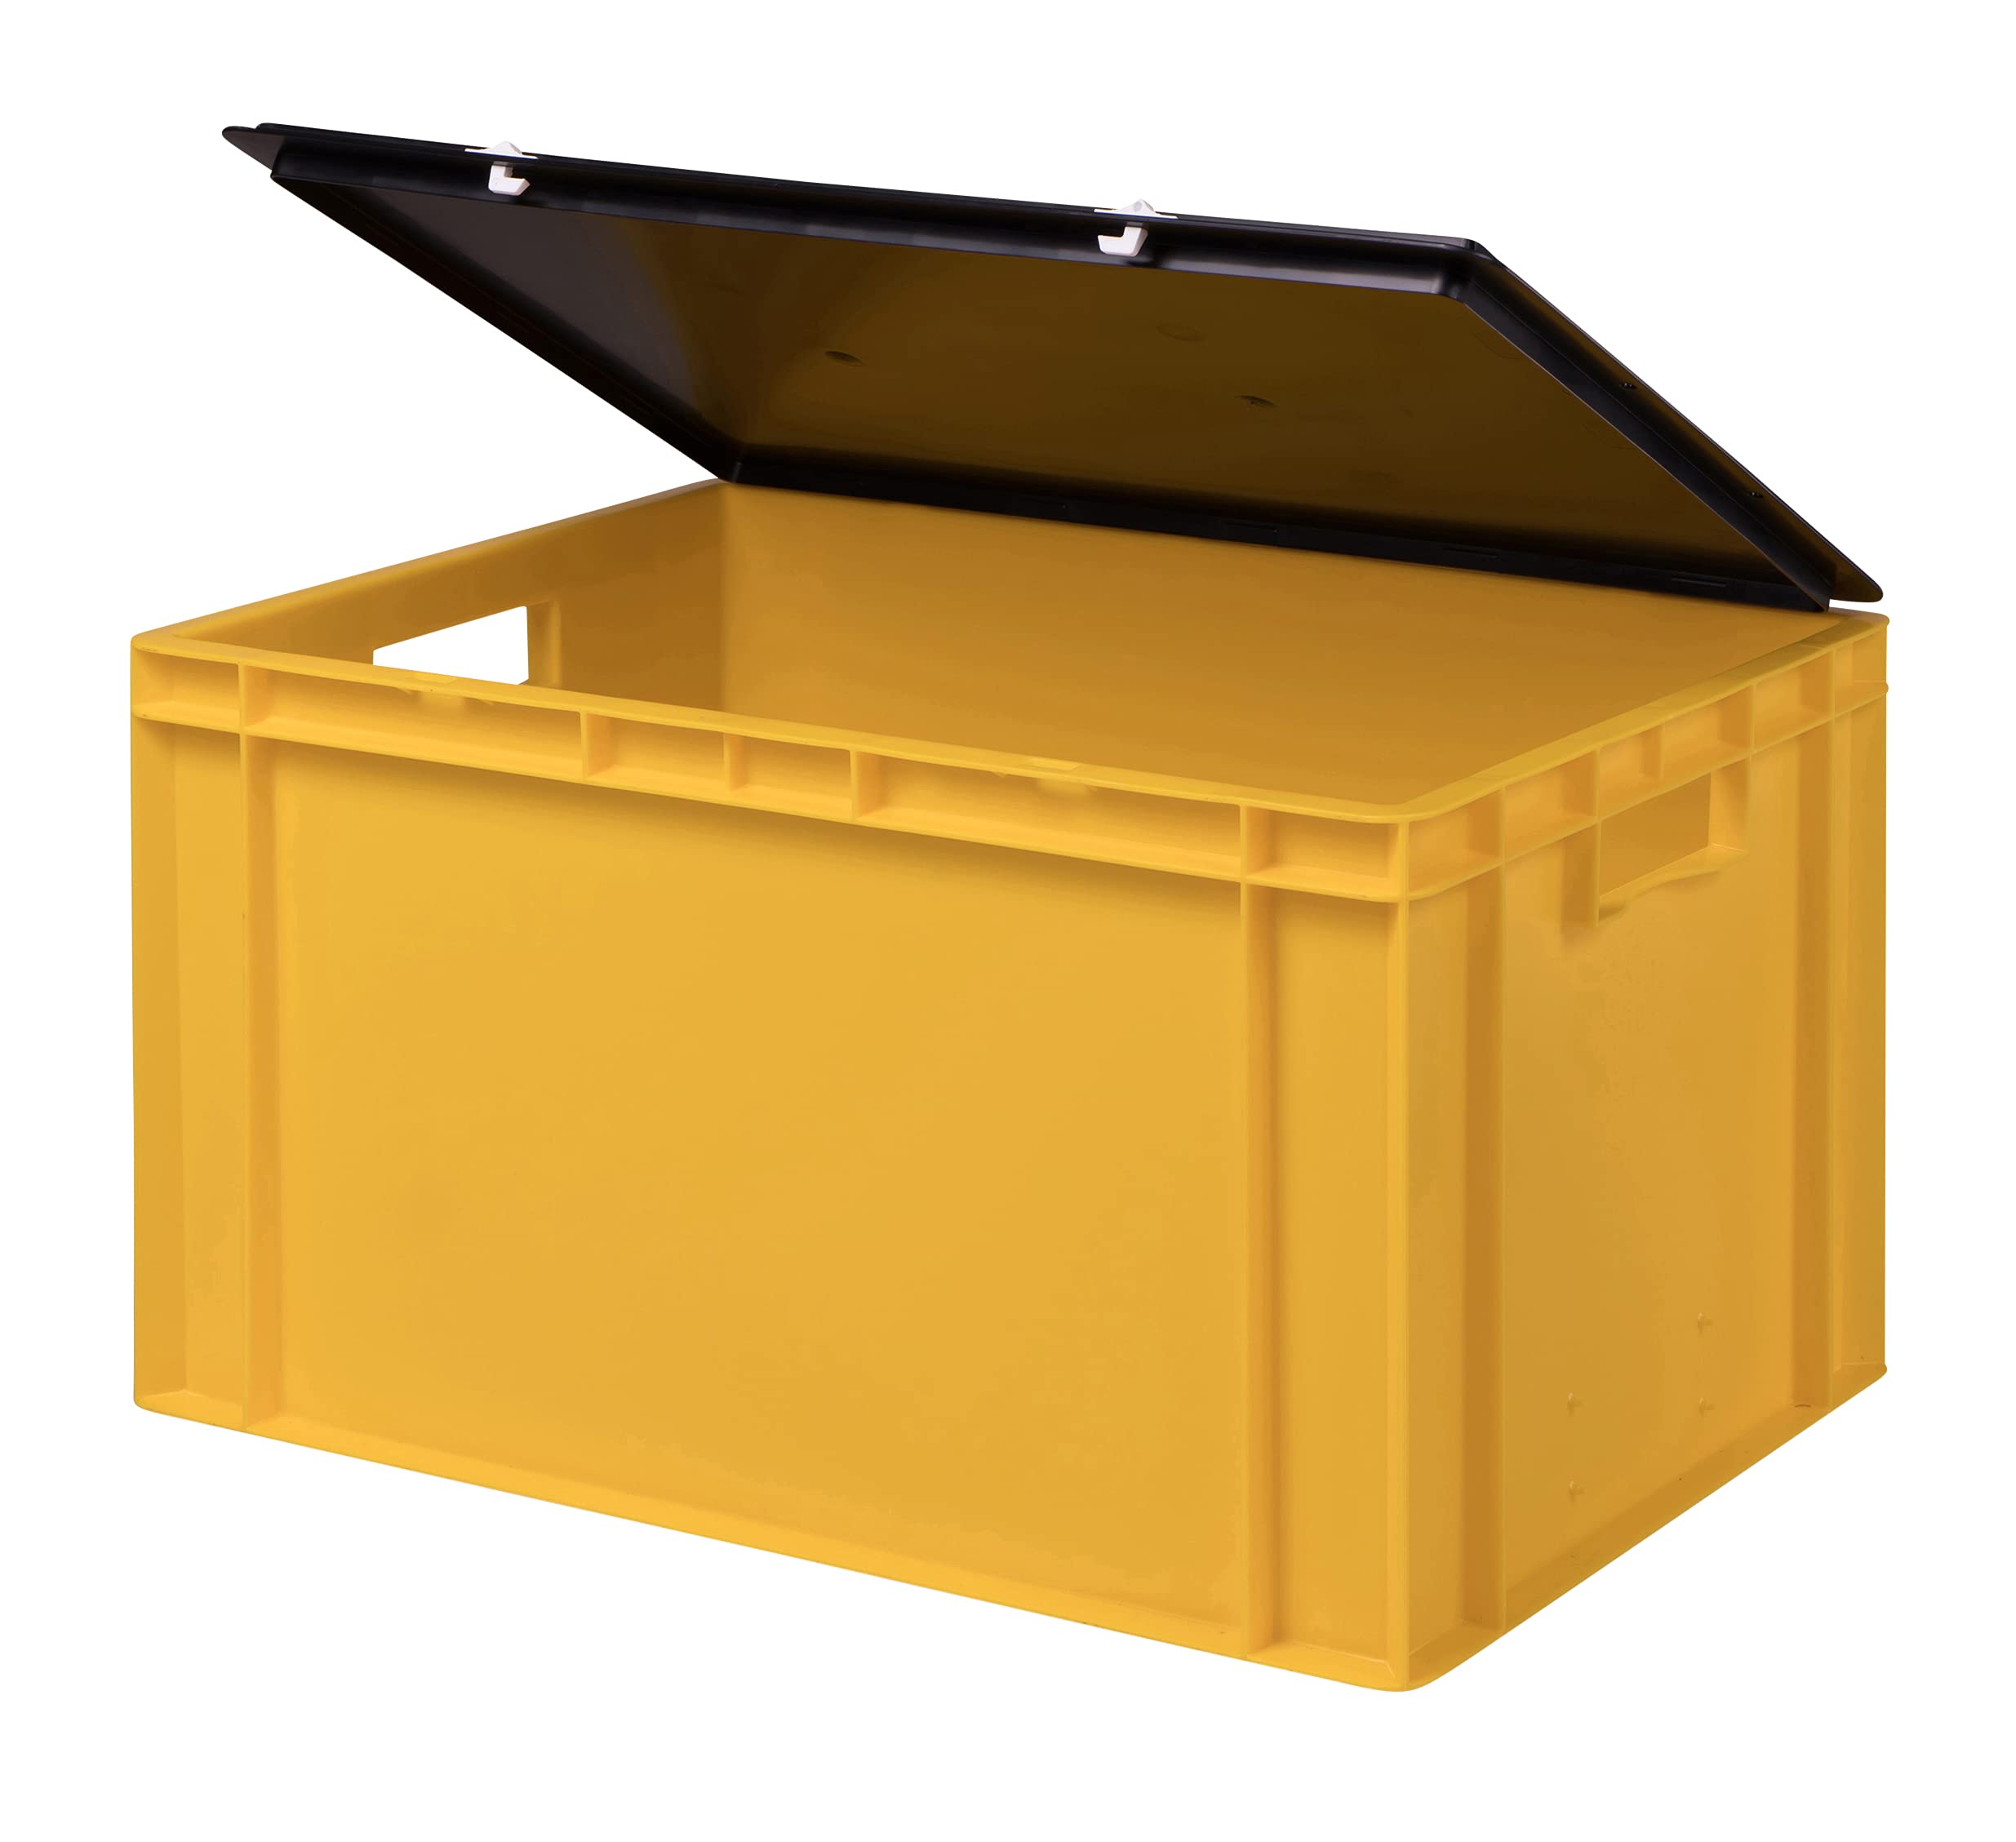 1a-TopStore Stabile Profi Aufbewahrungsbox Stapelbox Eurobox Stapelkiste mit Deckel, Kunststoffkiste lieferbar in 5 Farben und 21 Größen für Industrie, Gewerbe, Haushalt (gelb, 60x40x33 cm)